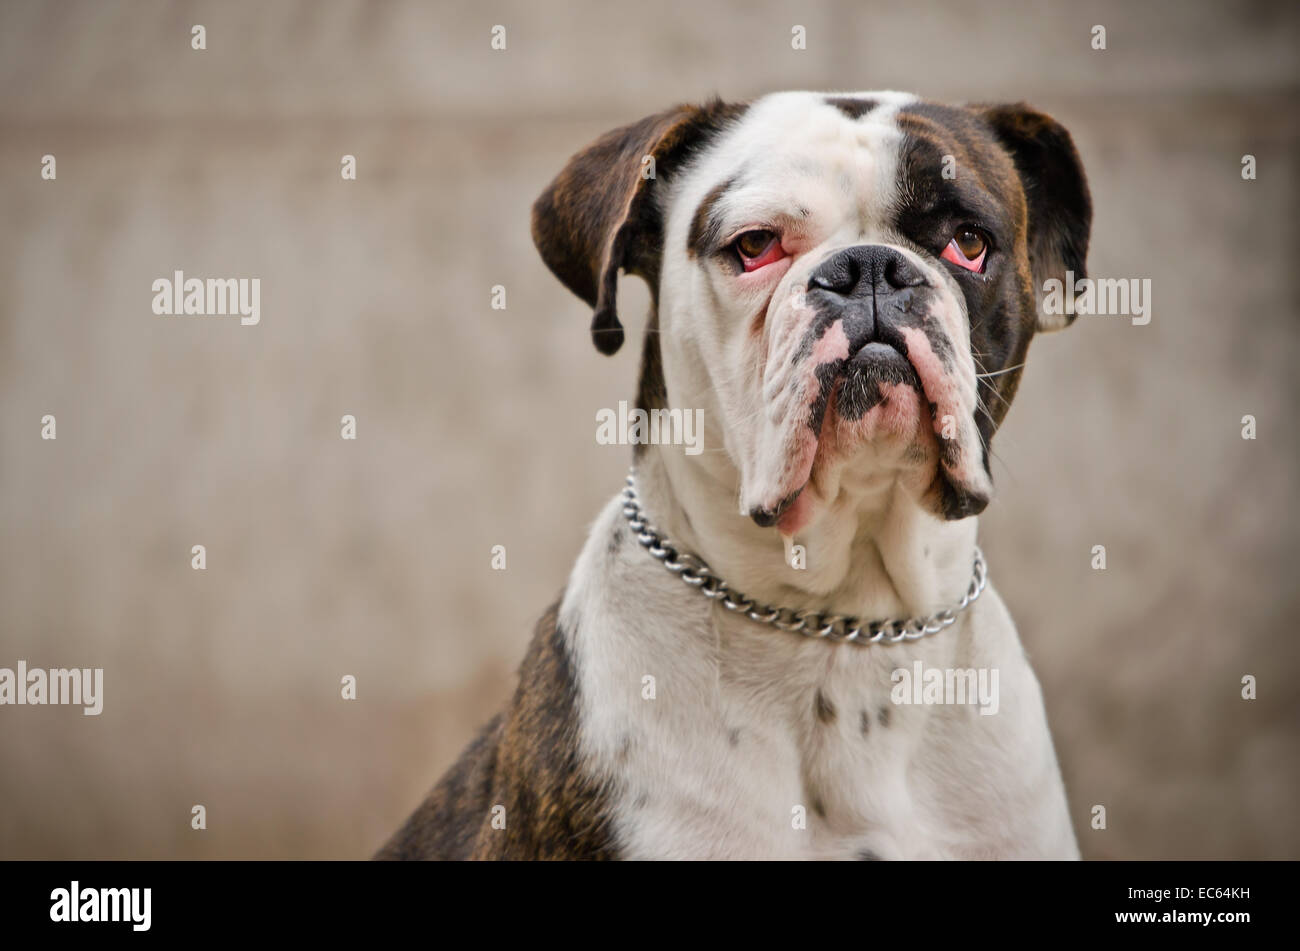 großer Hund mit roten Augen Stockfotografie - Alamy